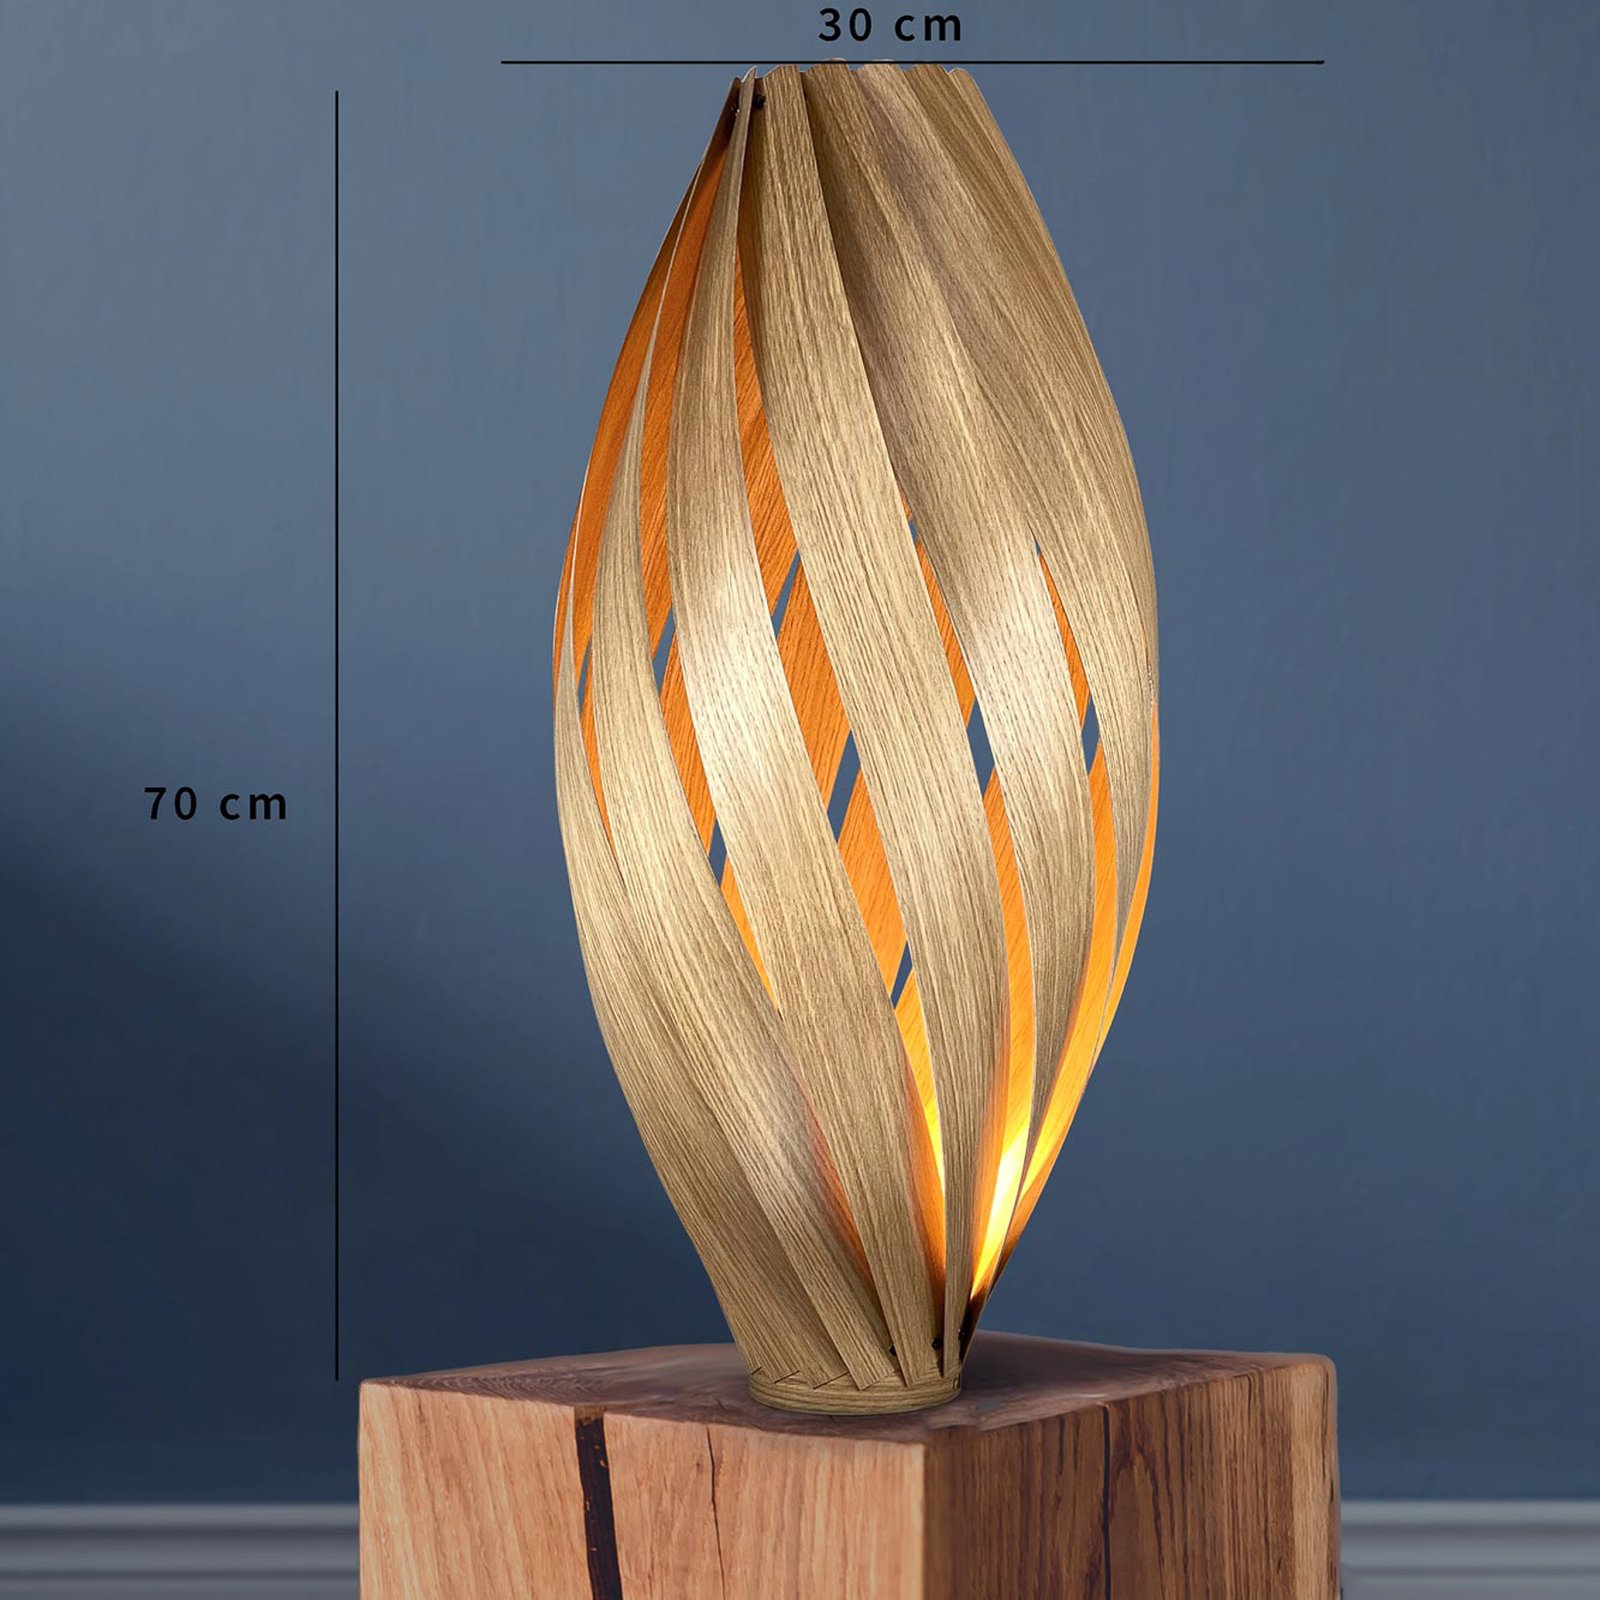 Gofurnit Ardere vloerlamp, eiken, hoogte 70 cm